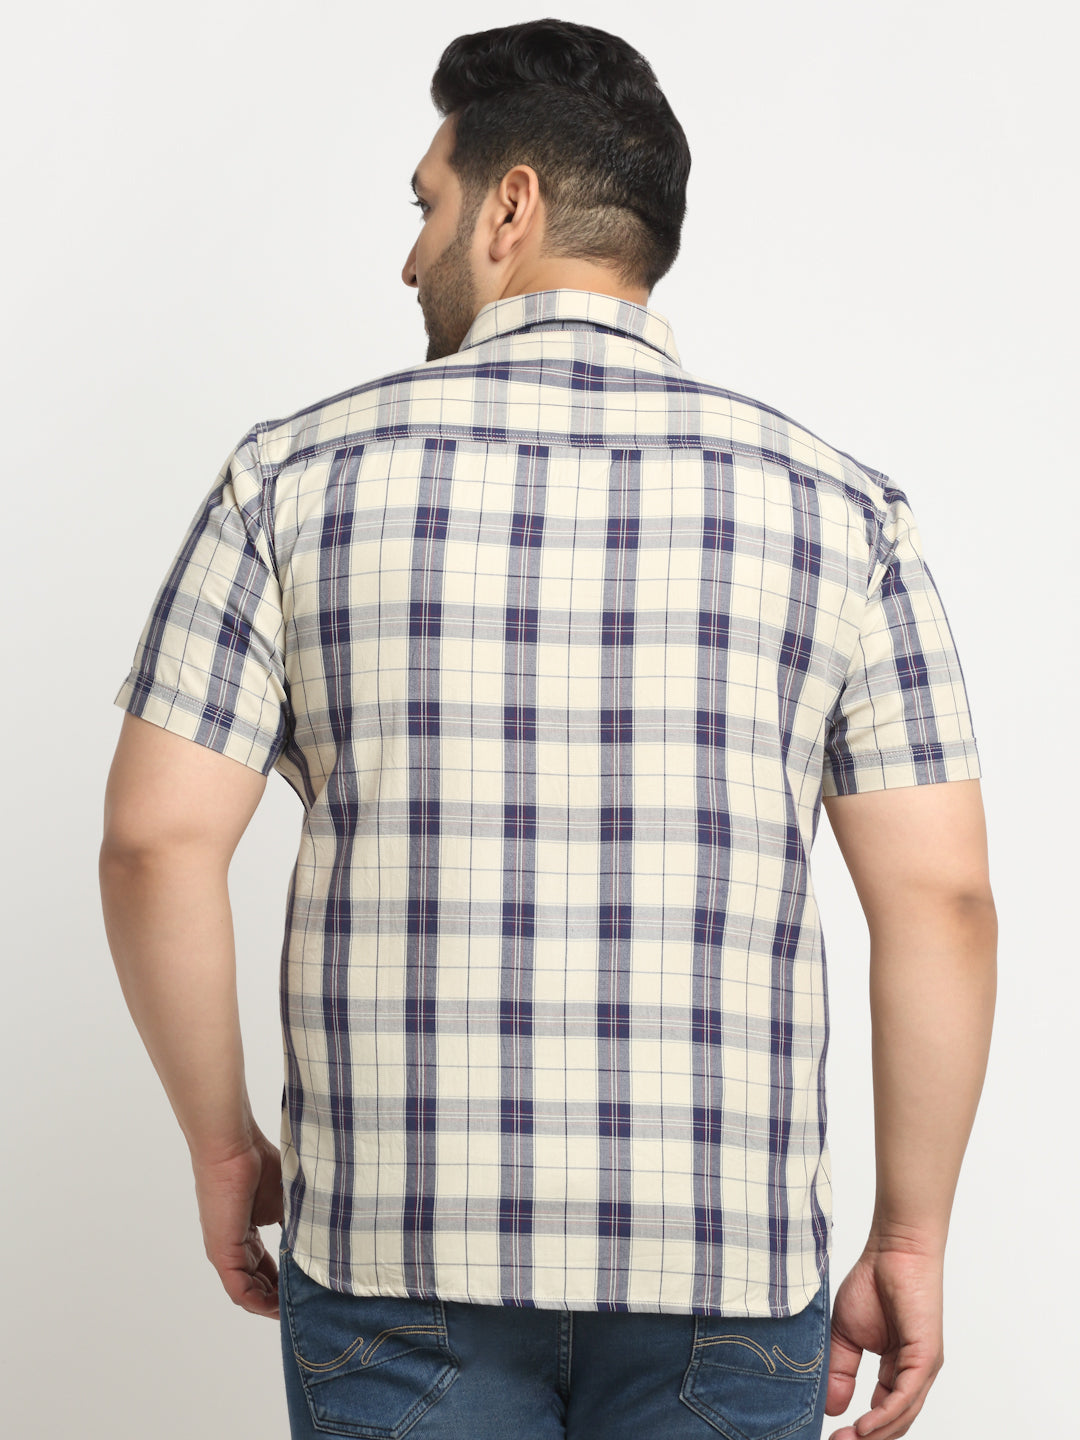 Plus Size Tartan Checks Cotton Casual Shirt